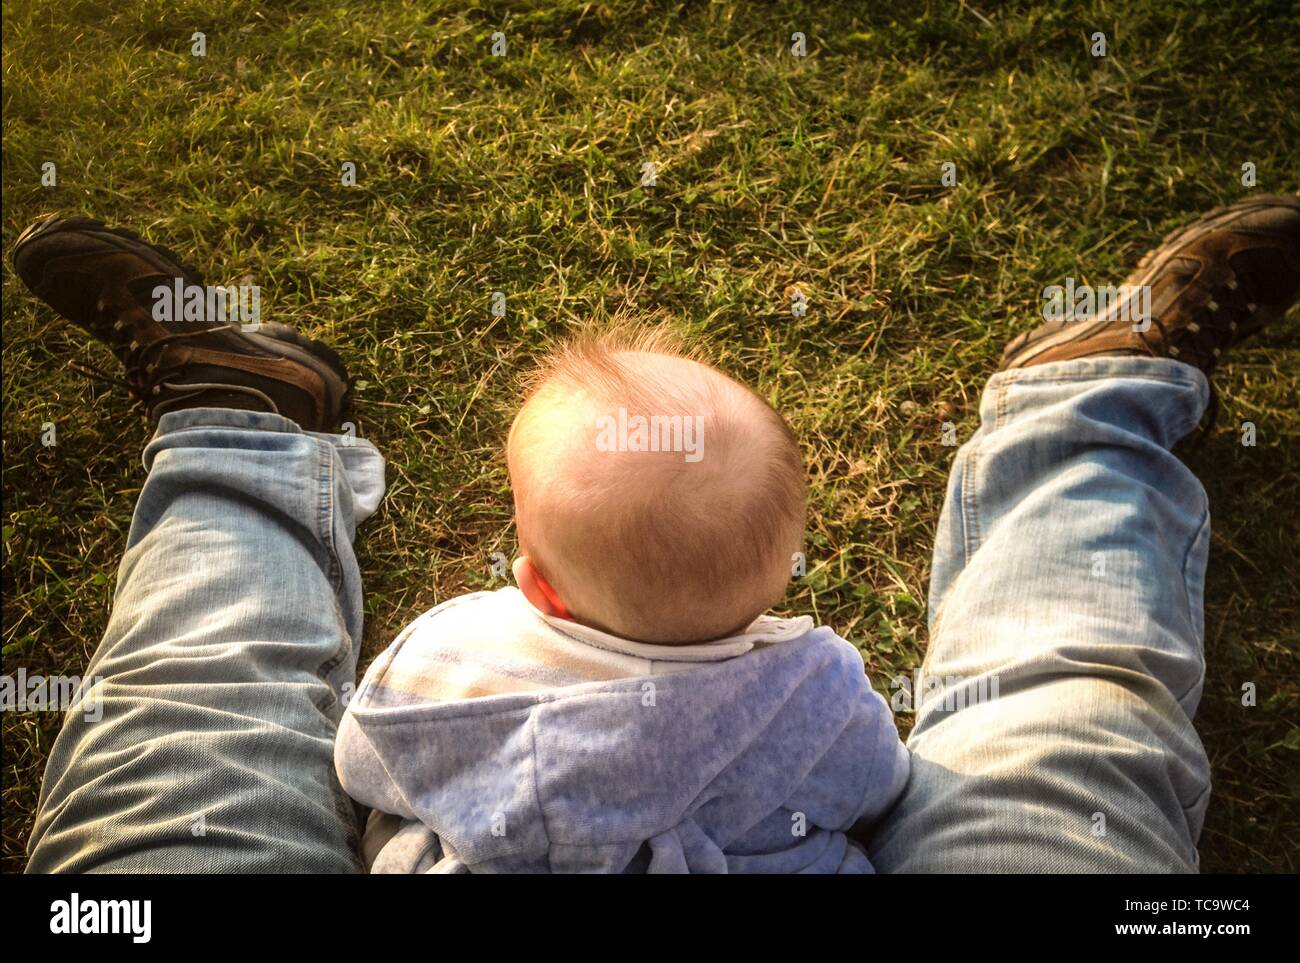 Baby Boy sentado sobre hierba entre sus padres las piernas. Los padres teniendo cuidado de bebés concepto. Foto de stock